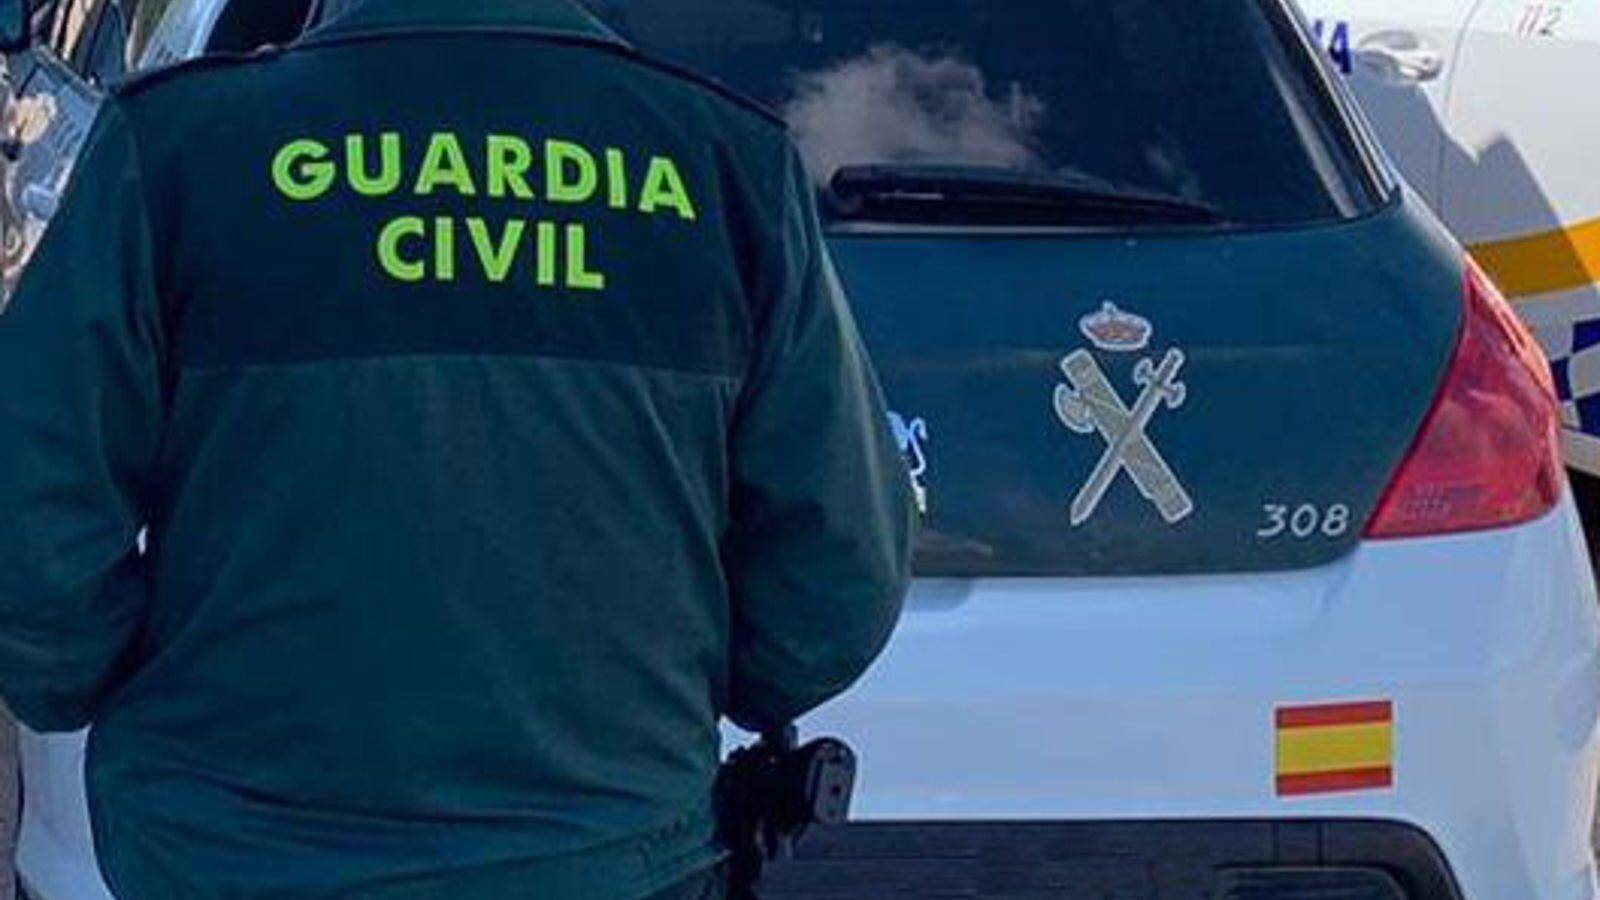 La Guardia Civil de Boadilla detiene a tres hombres por delitos de estafa, usurpación, falsificación y pertenencia a grupo criminal